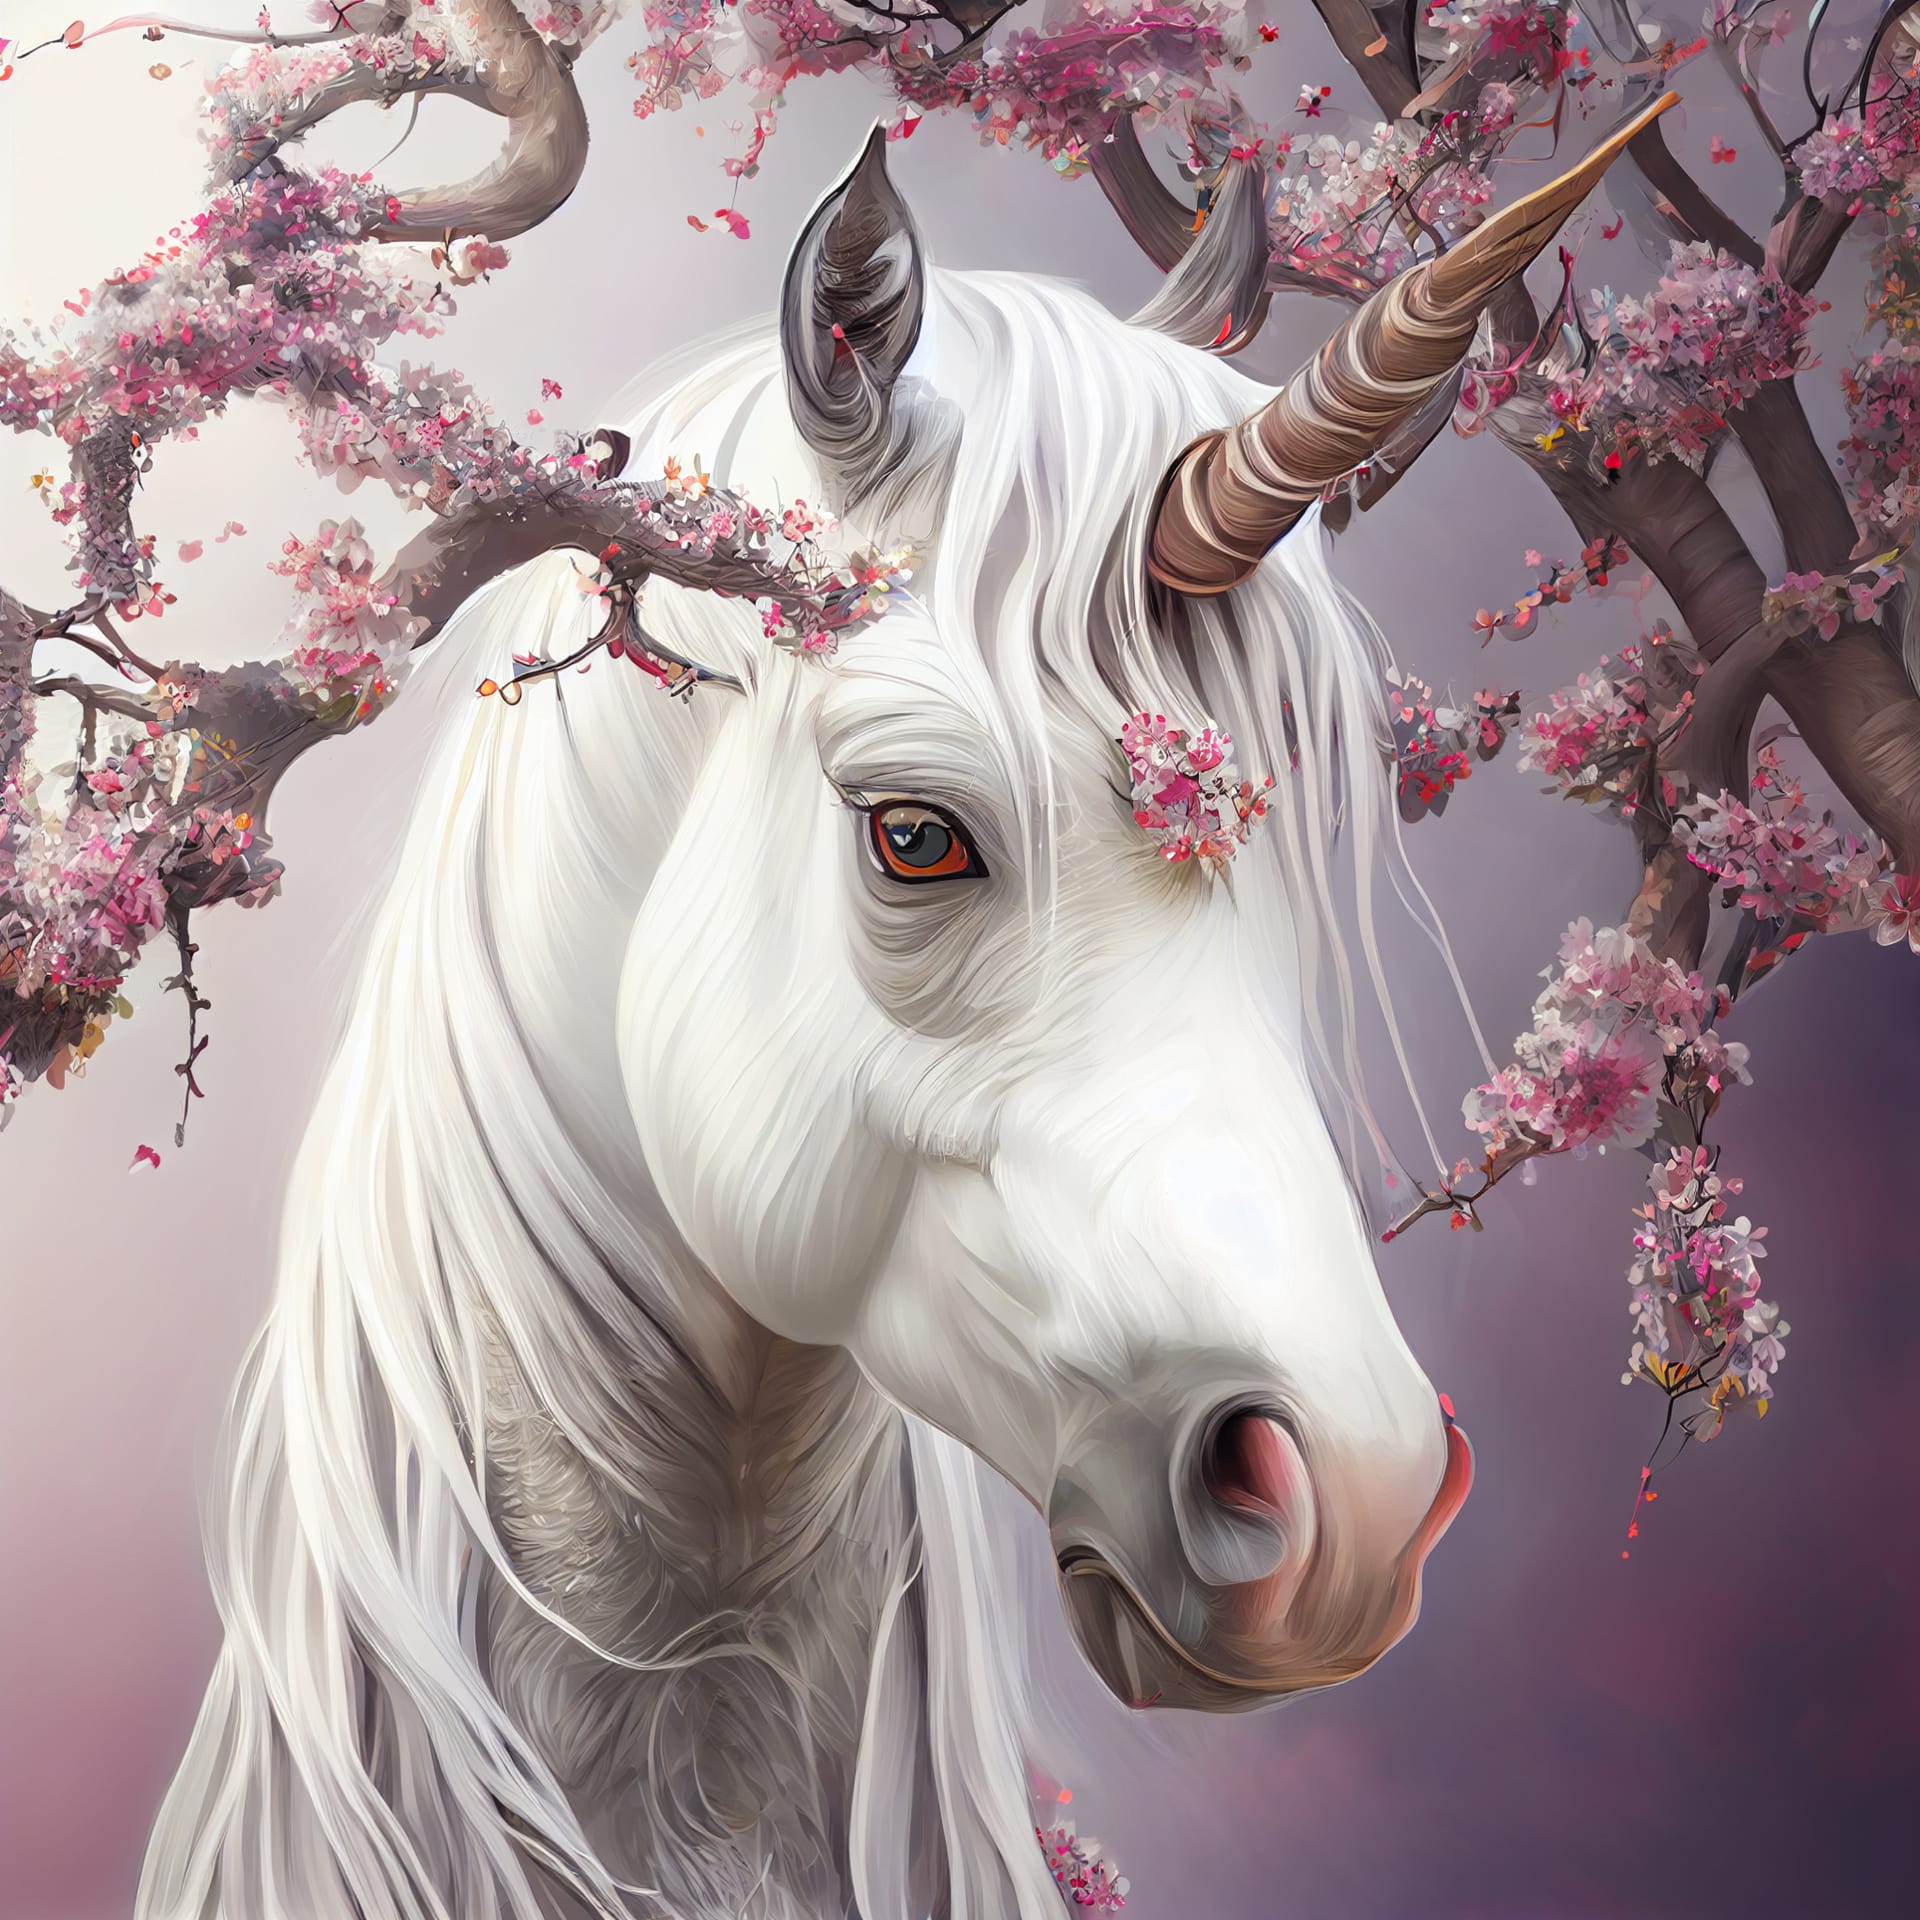 Pink profile picture cute fantasy unicorn cherry blossom sakura tree illustration